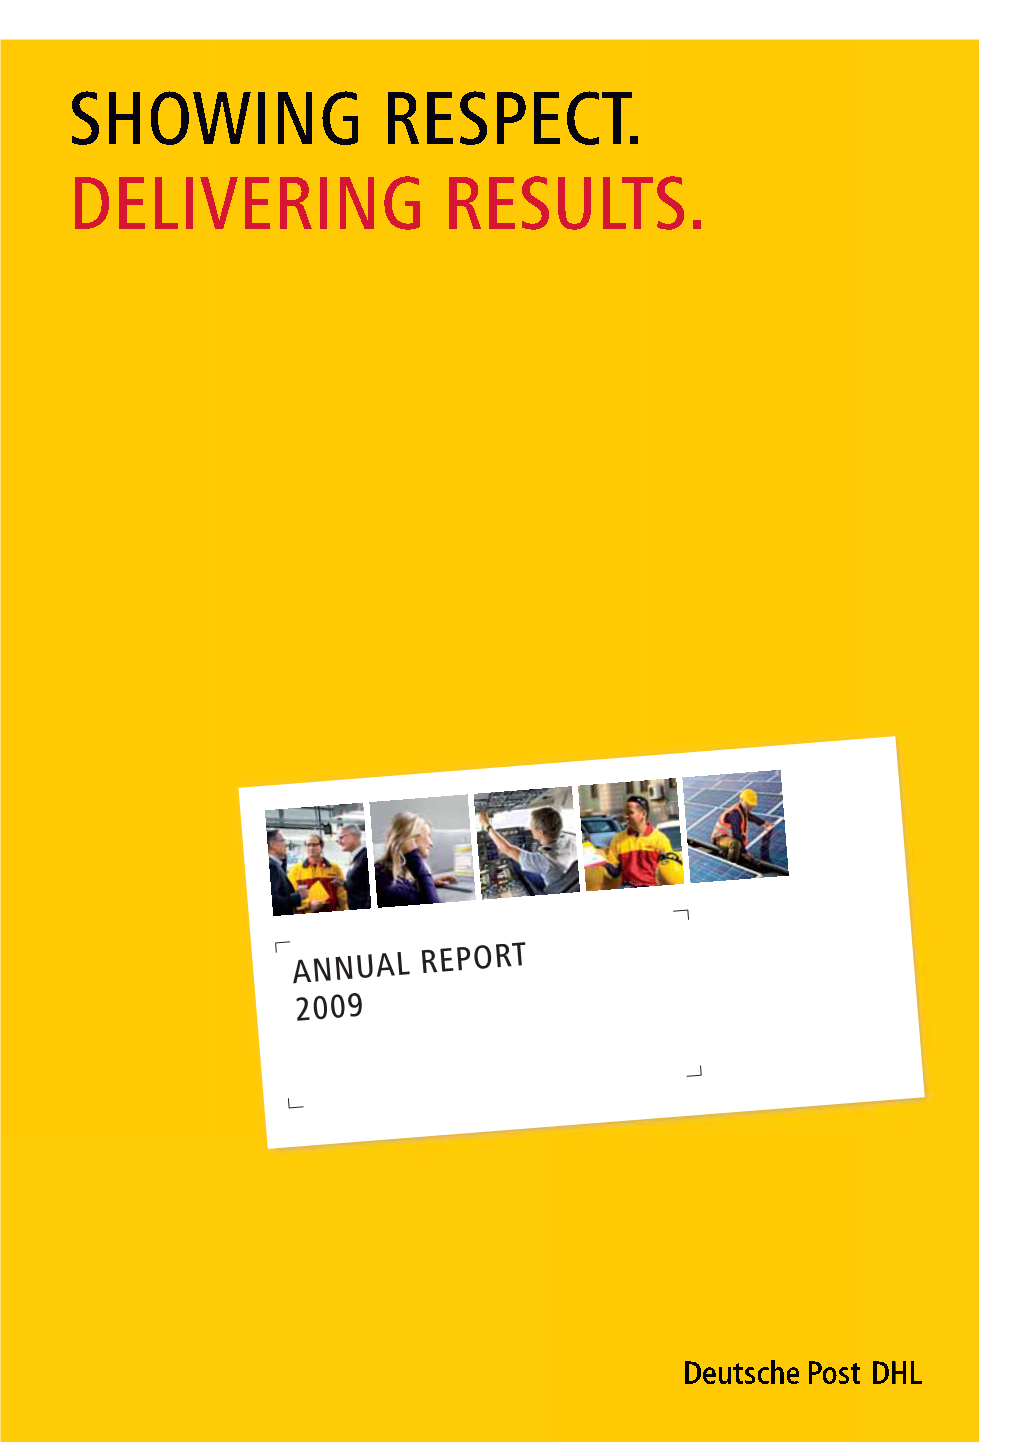 Annual Report 2009 I